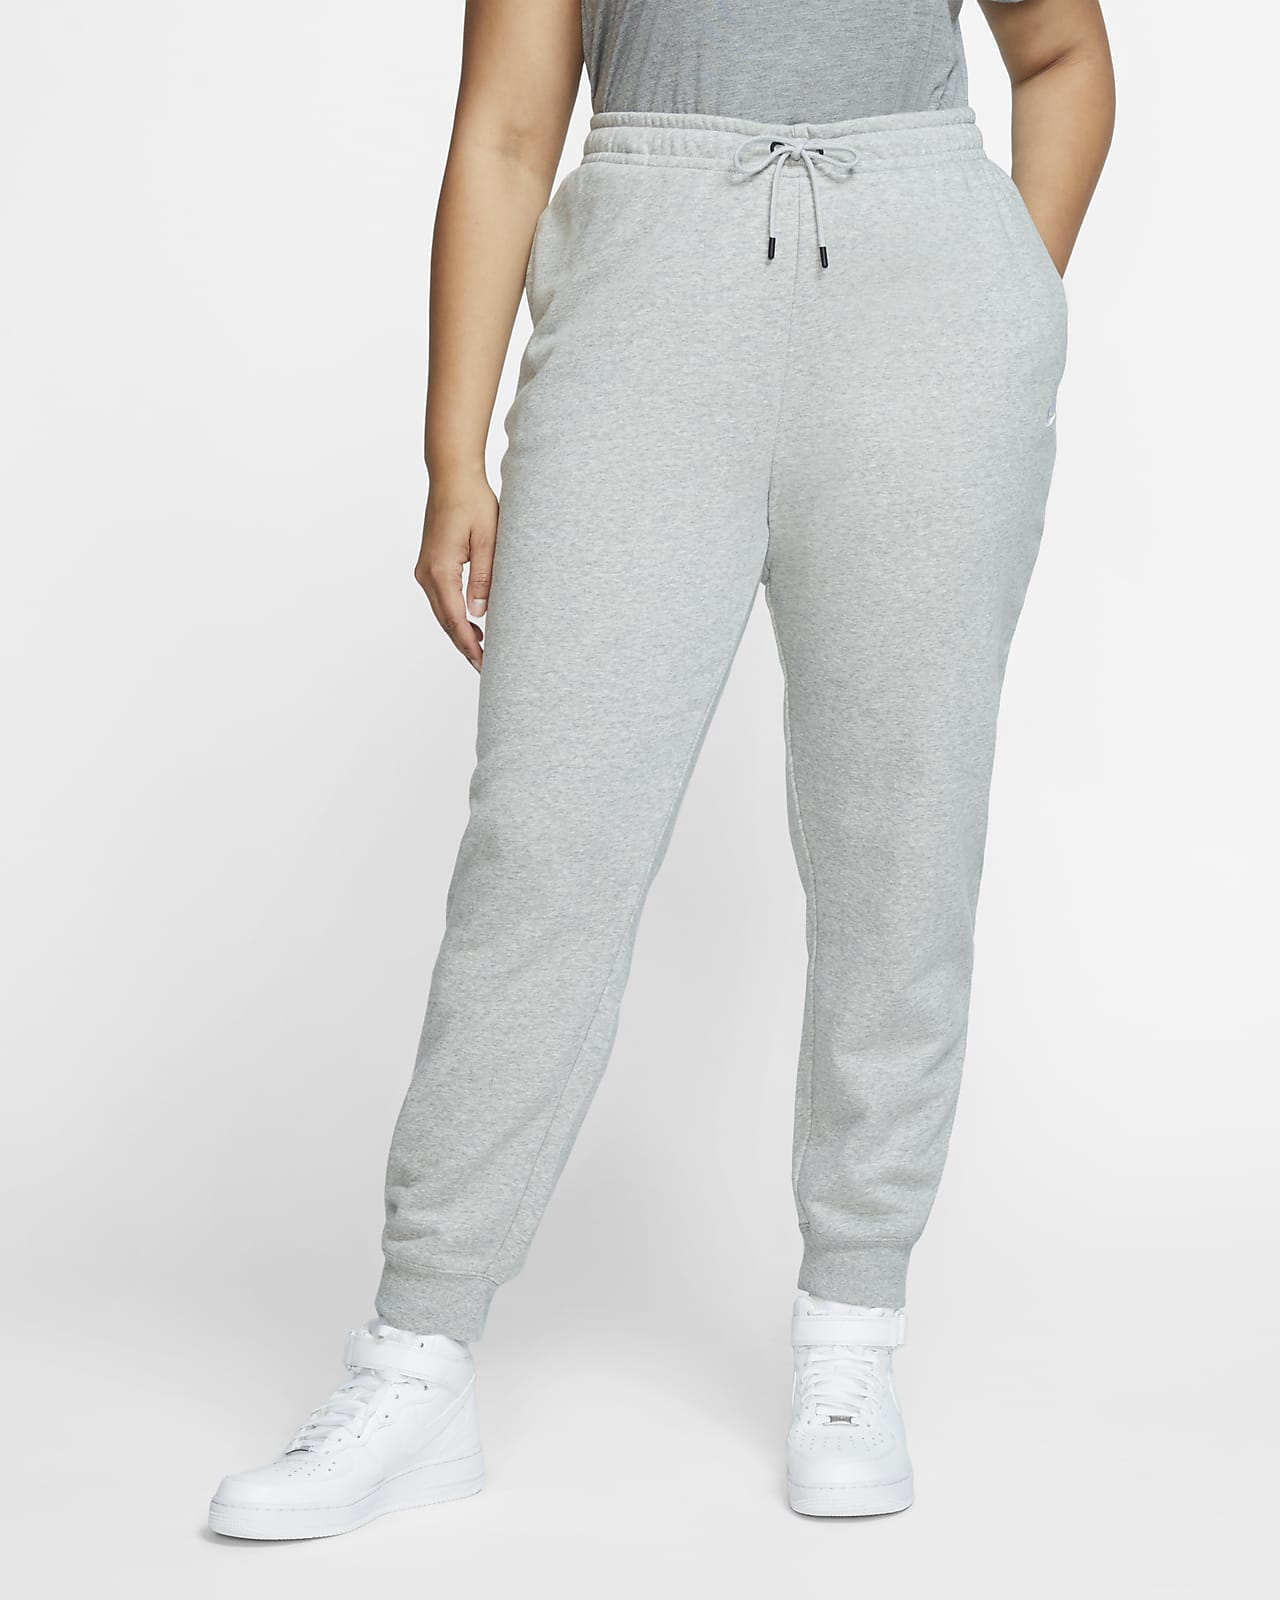 Nike Sportswear Essential Women's Fleece Pants (Plus Size). Nike.com